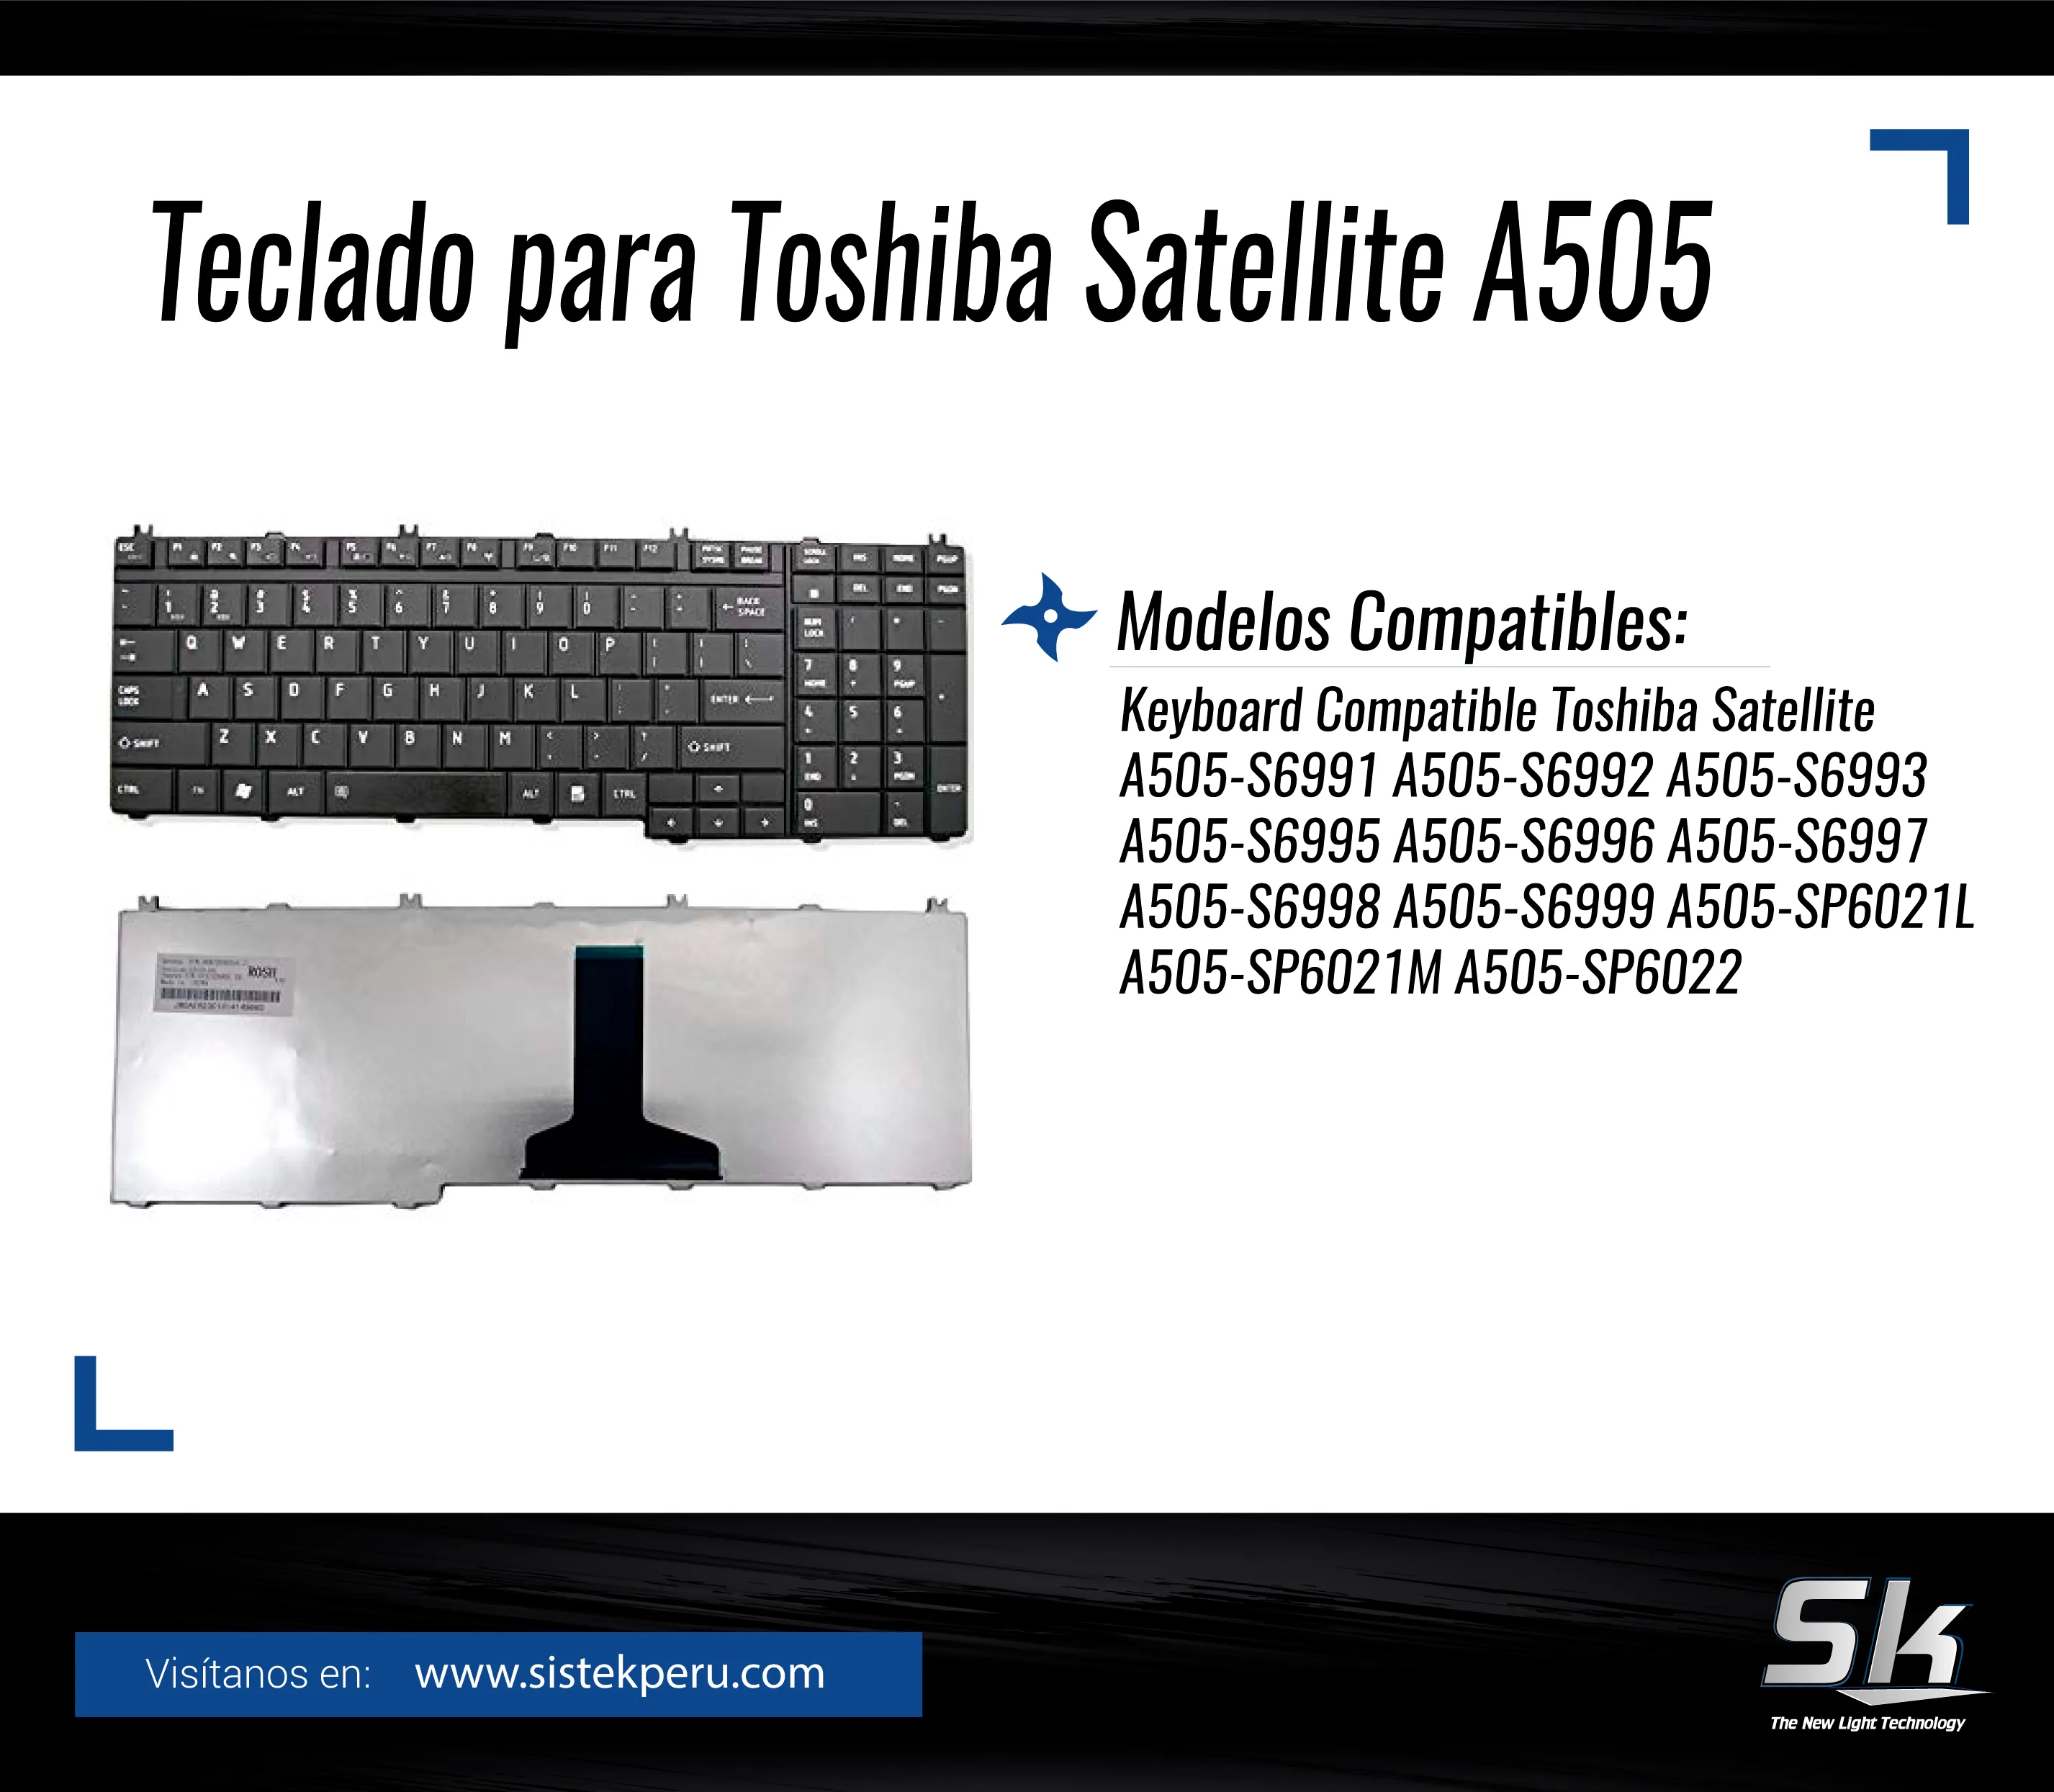 Teclado para Toshiba Satellite A505